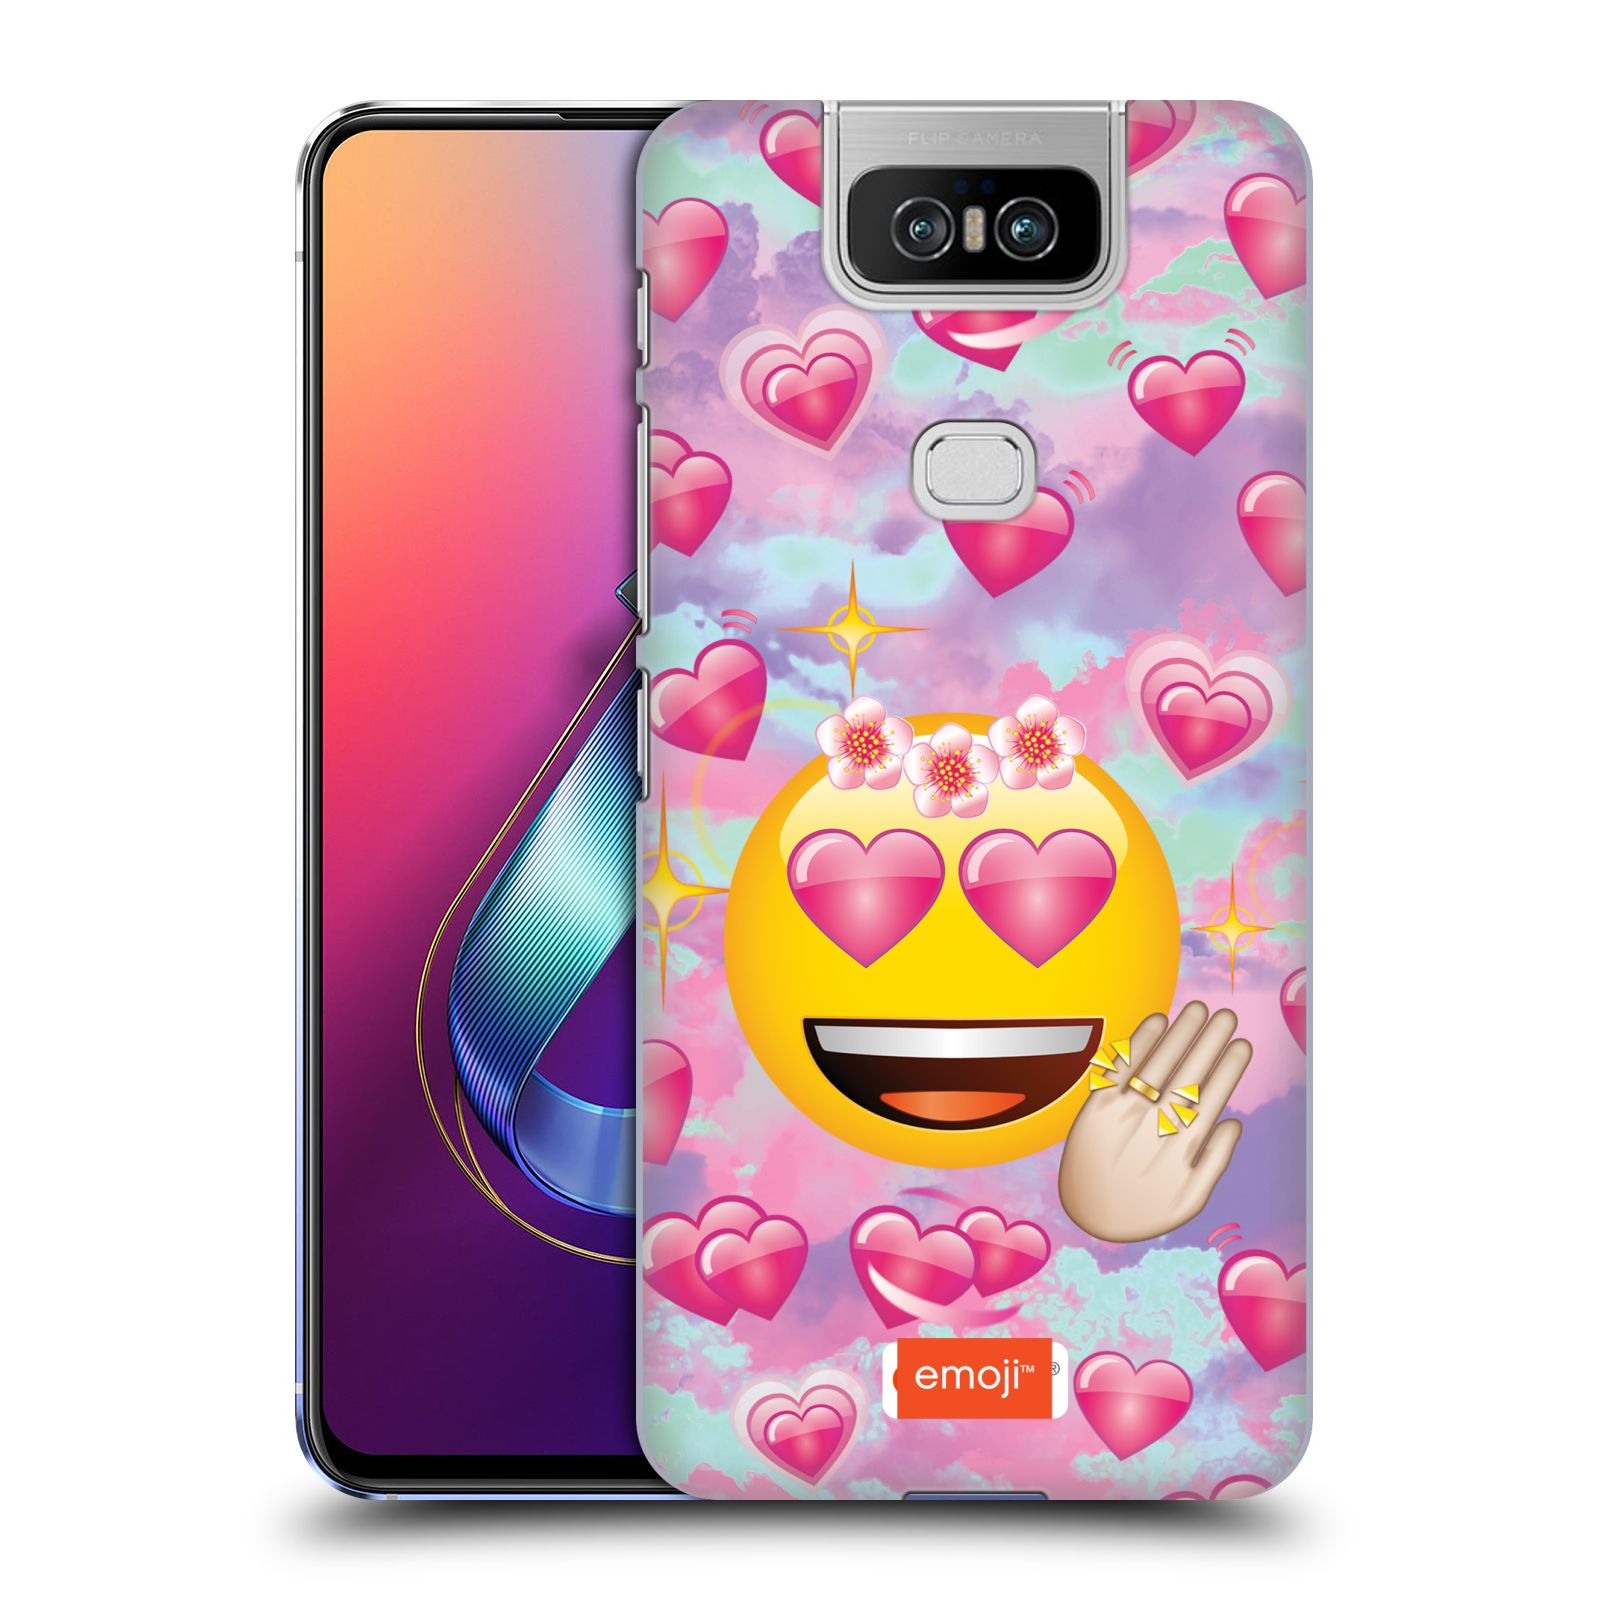 Pouzdro na mobil Asus Zenfone 6 ZS630KL - HEAD CASE - smajlík oficiální kryt EMOJI velký smajlík růžová srdíčka